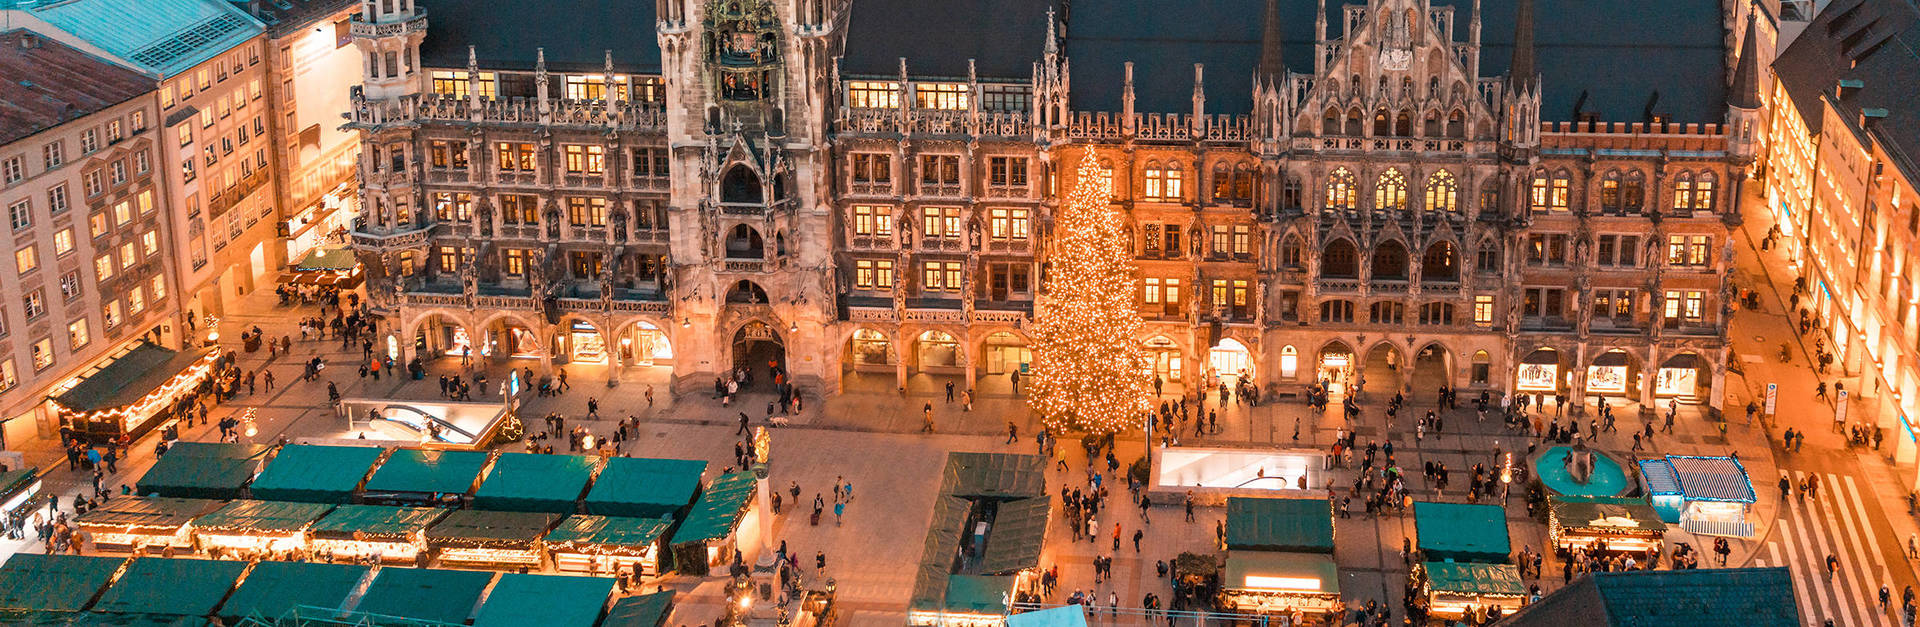 Weihnachtsshopping in München - H-Hotels.com - Offizielle Webseite